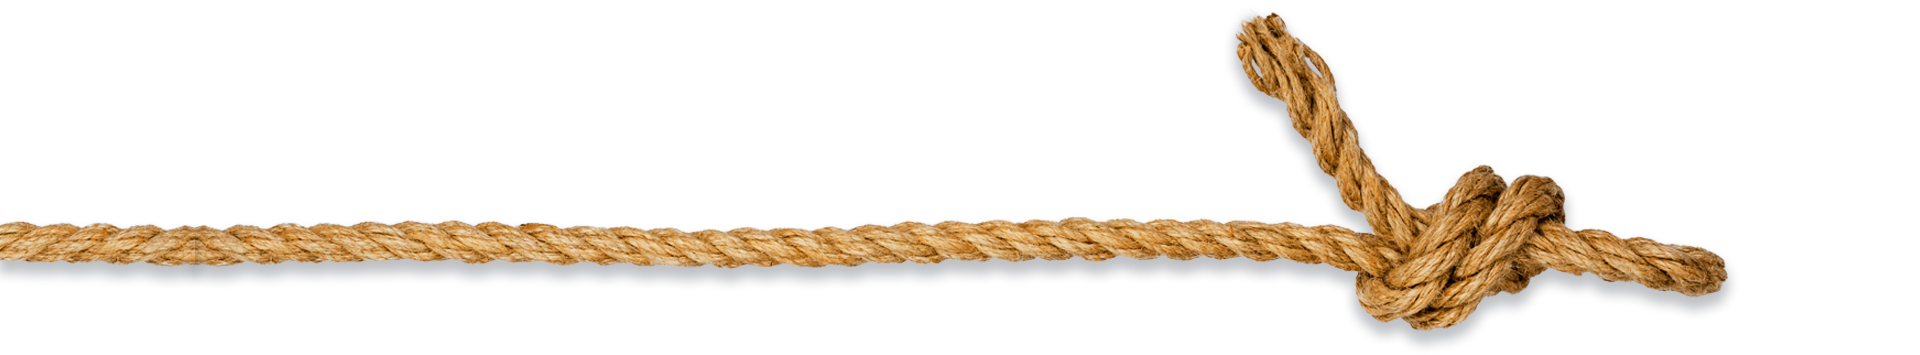 bottom rope